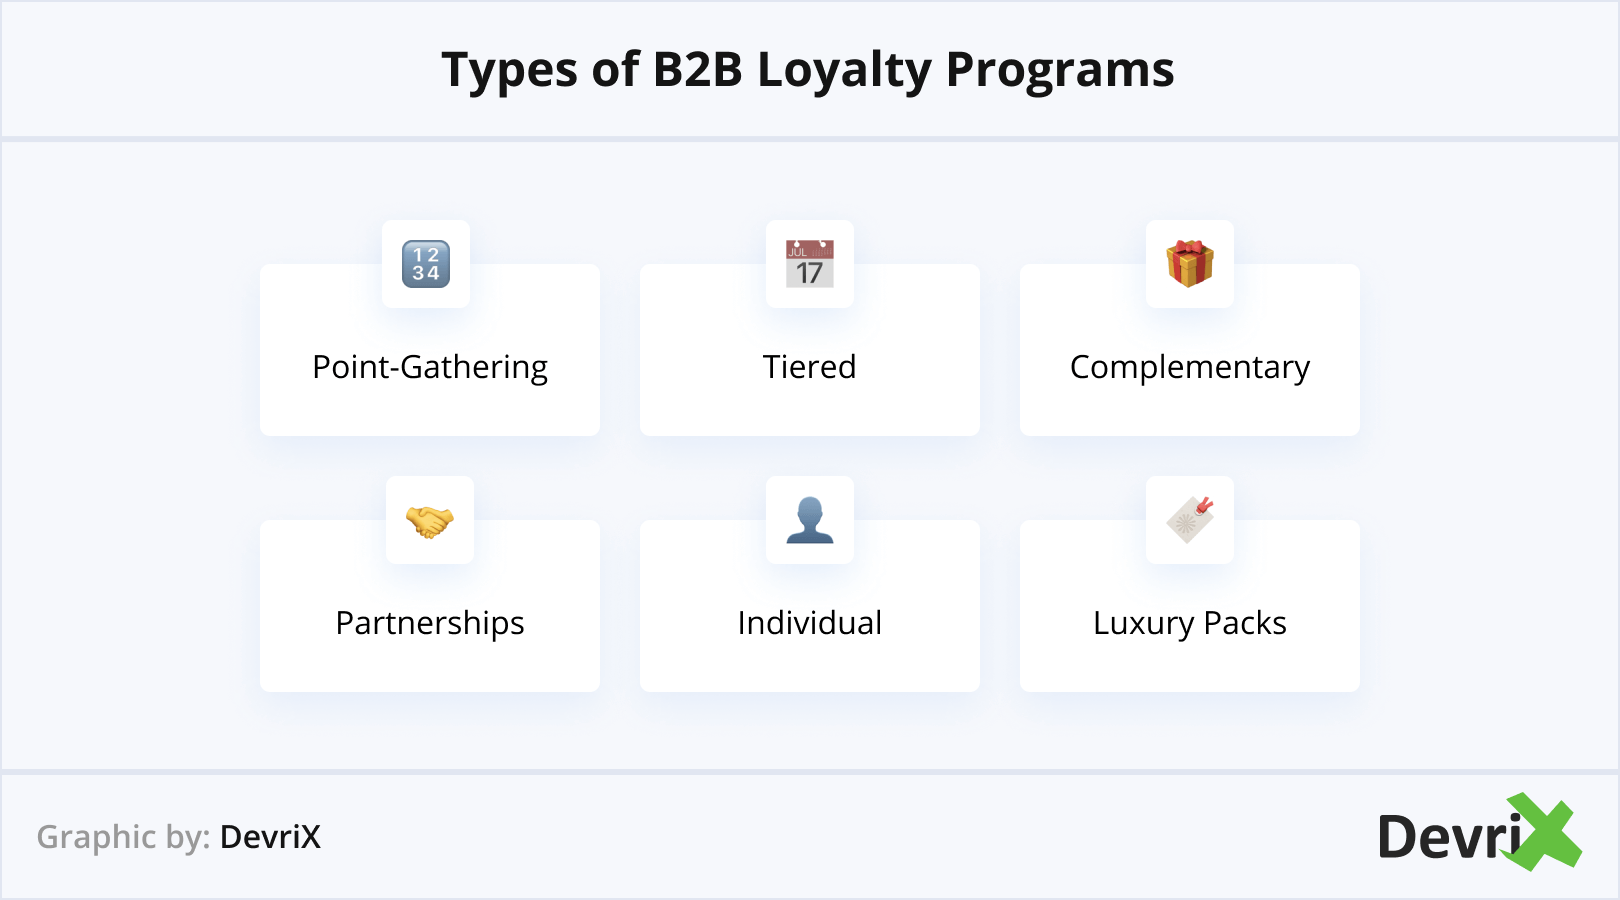 Types of B2B Loyalty Programs